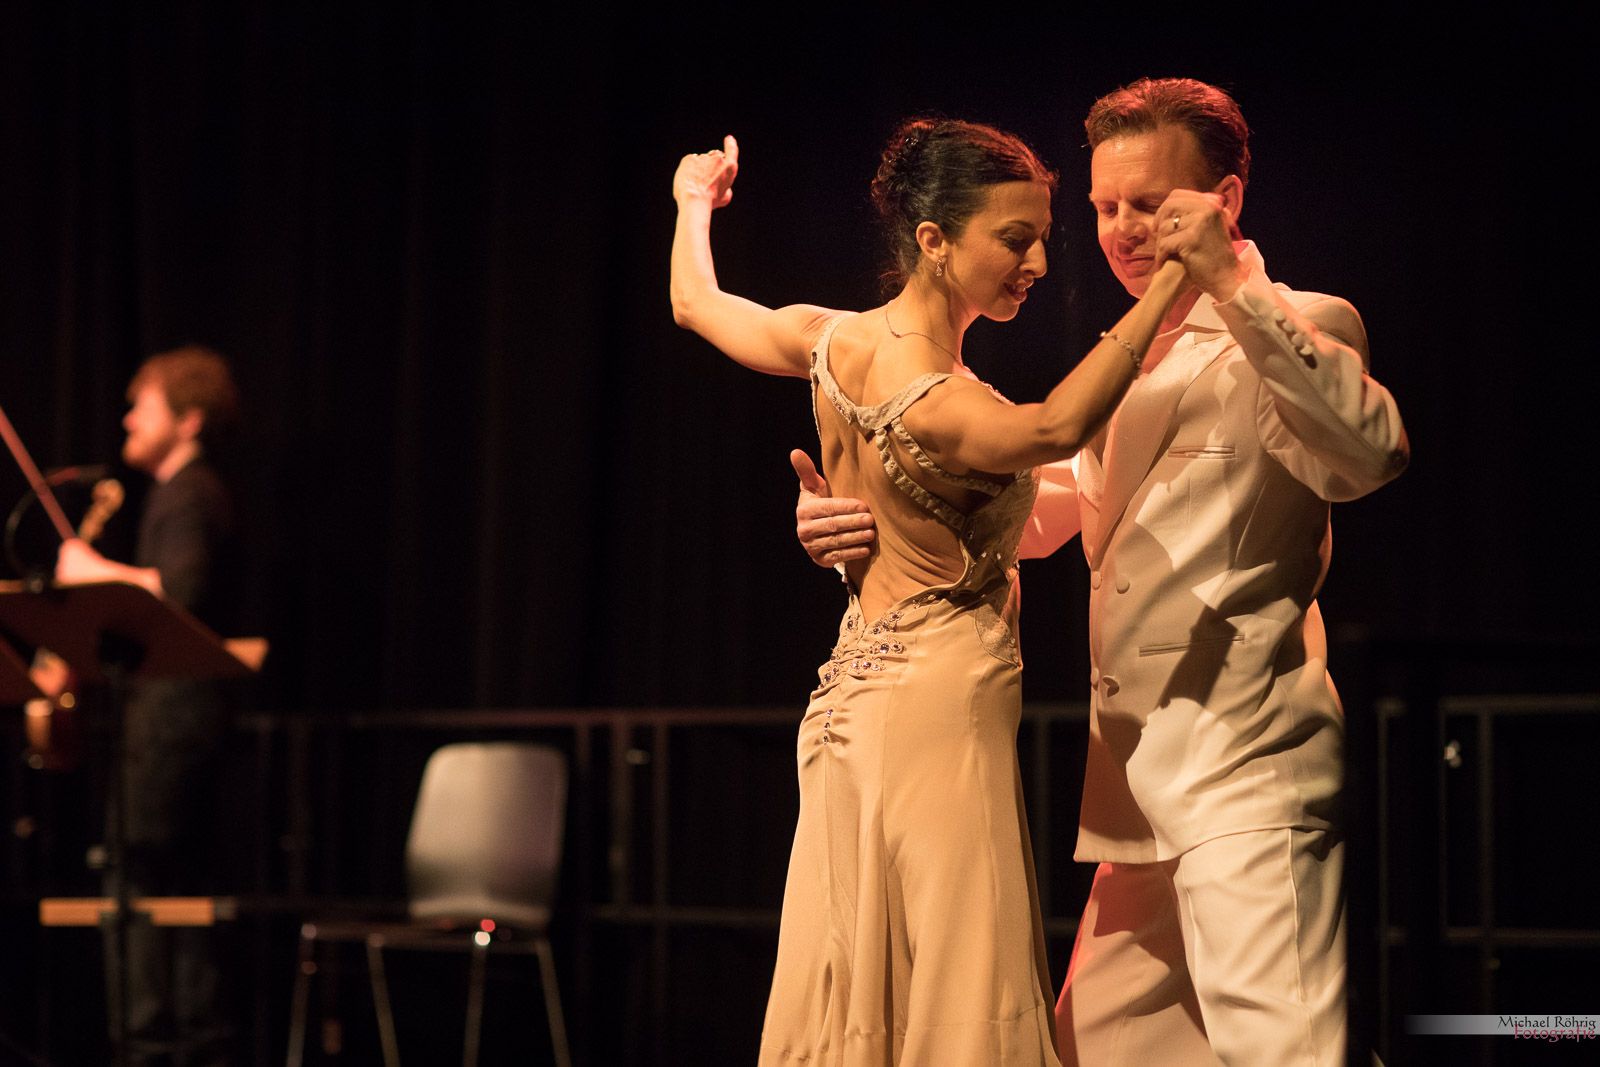 Tango Argentino getanzt von Nina González und Uwe Kops, Tango-Schule VidaMia. Fotograf: Michael Röhrig